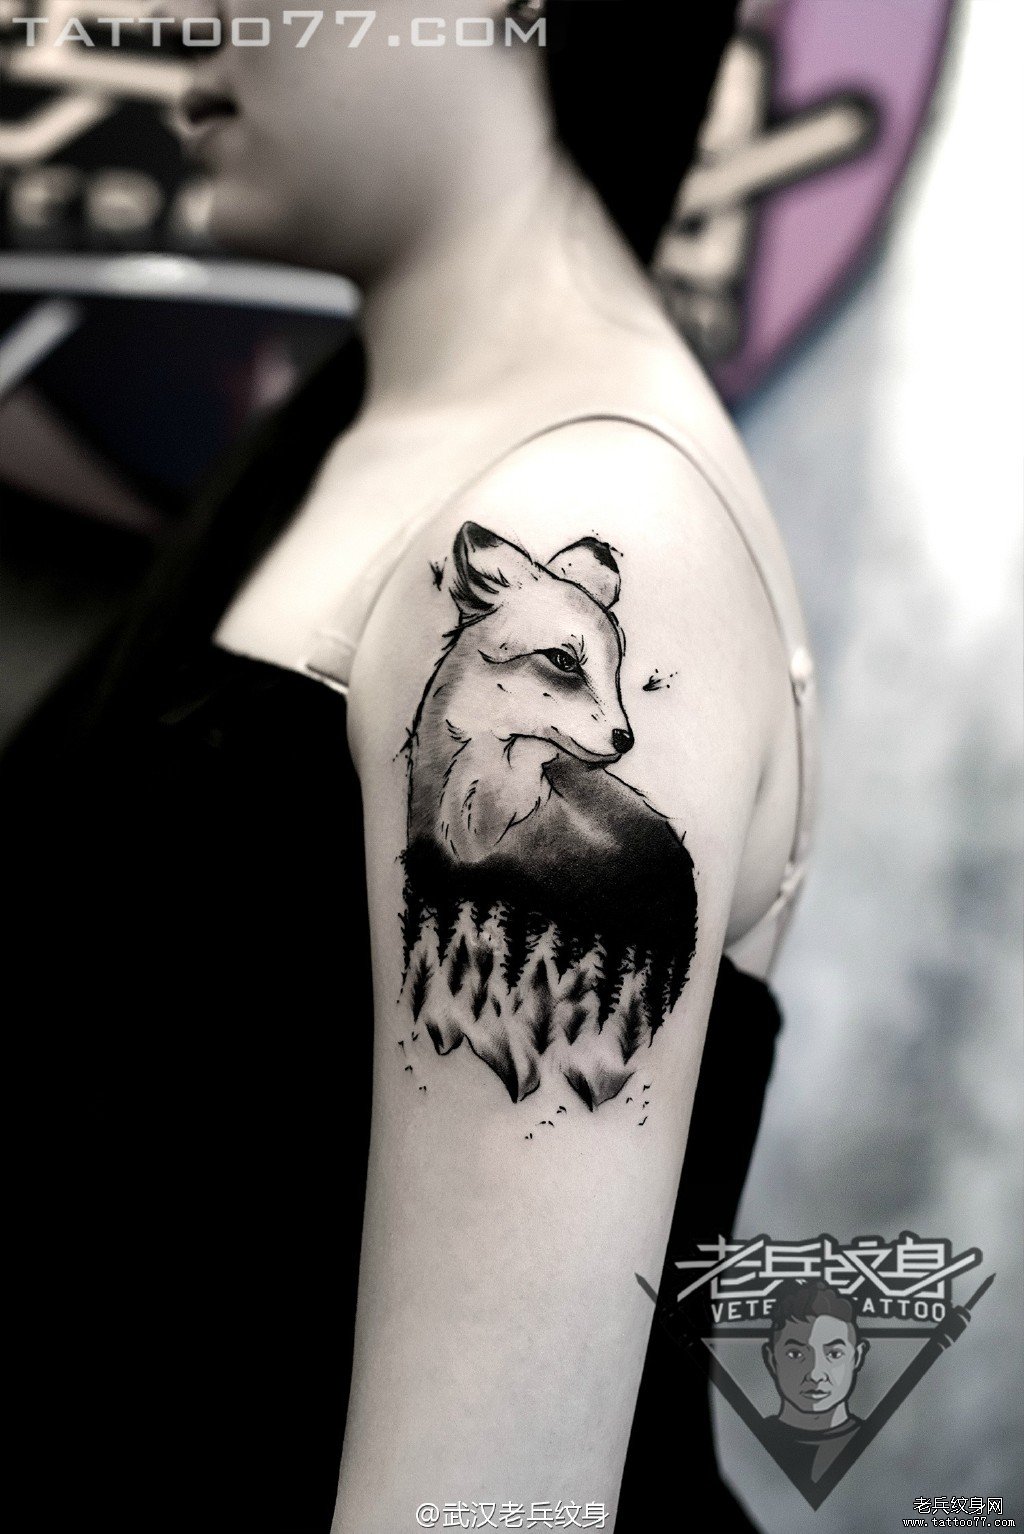 妹子手臂狐狸纹身图案作品由武汉女纹身师打造